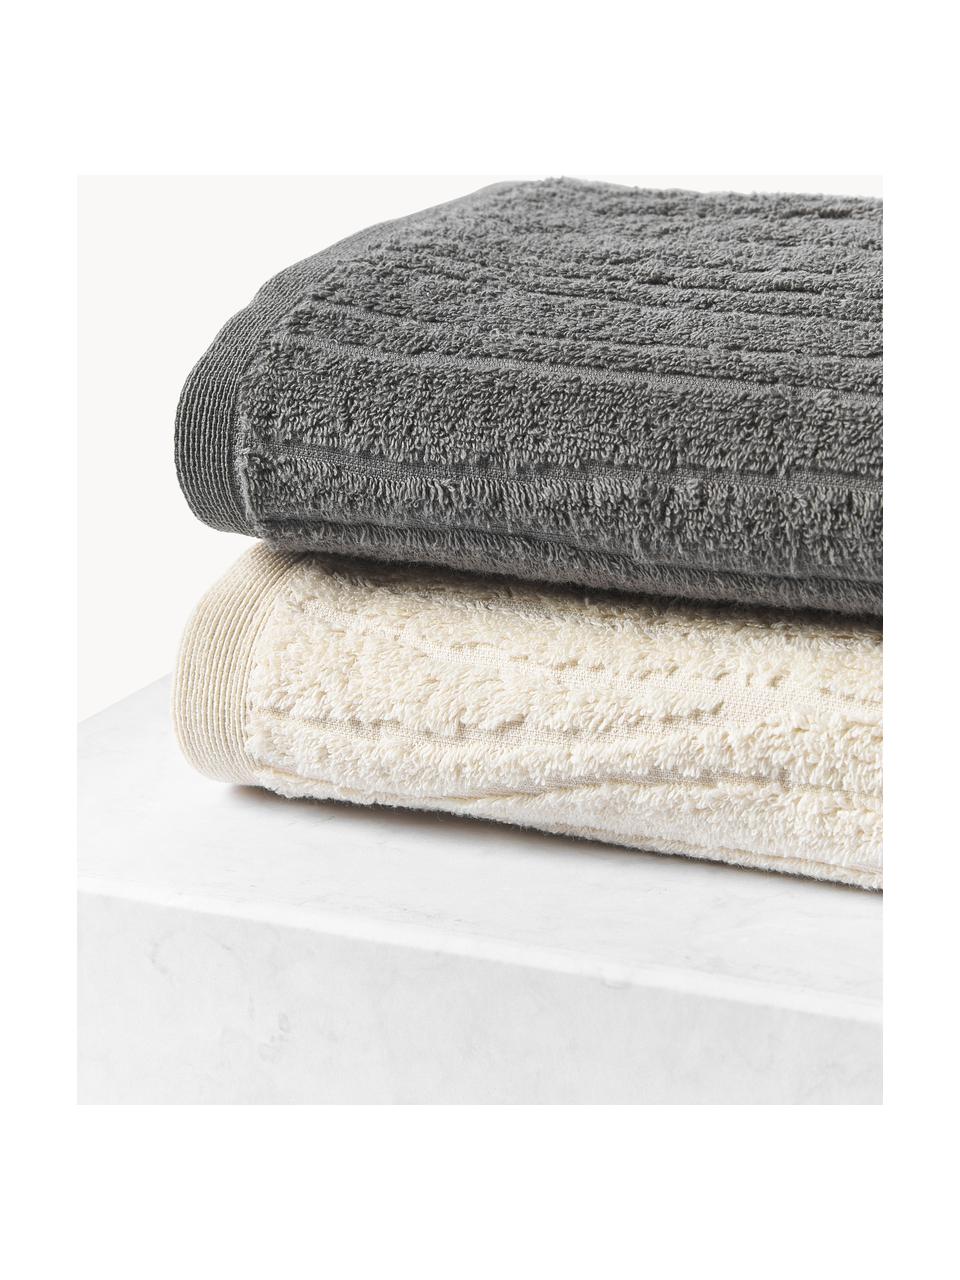 Komplet ręczników z bawełny Audrina, różne rozmiary, Jasny beżowy, 3 elem. (ręcznik dla gości, ręcznik do rąk, ręcznik kąpielowy)